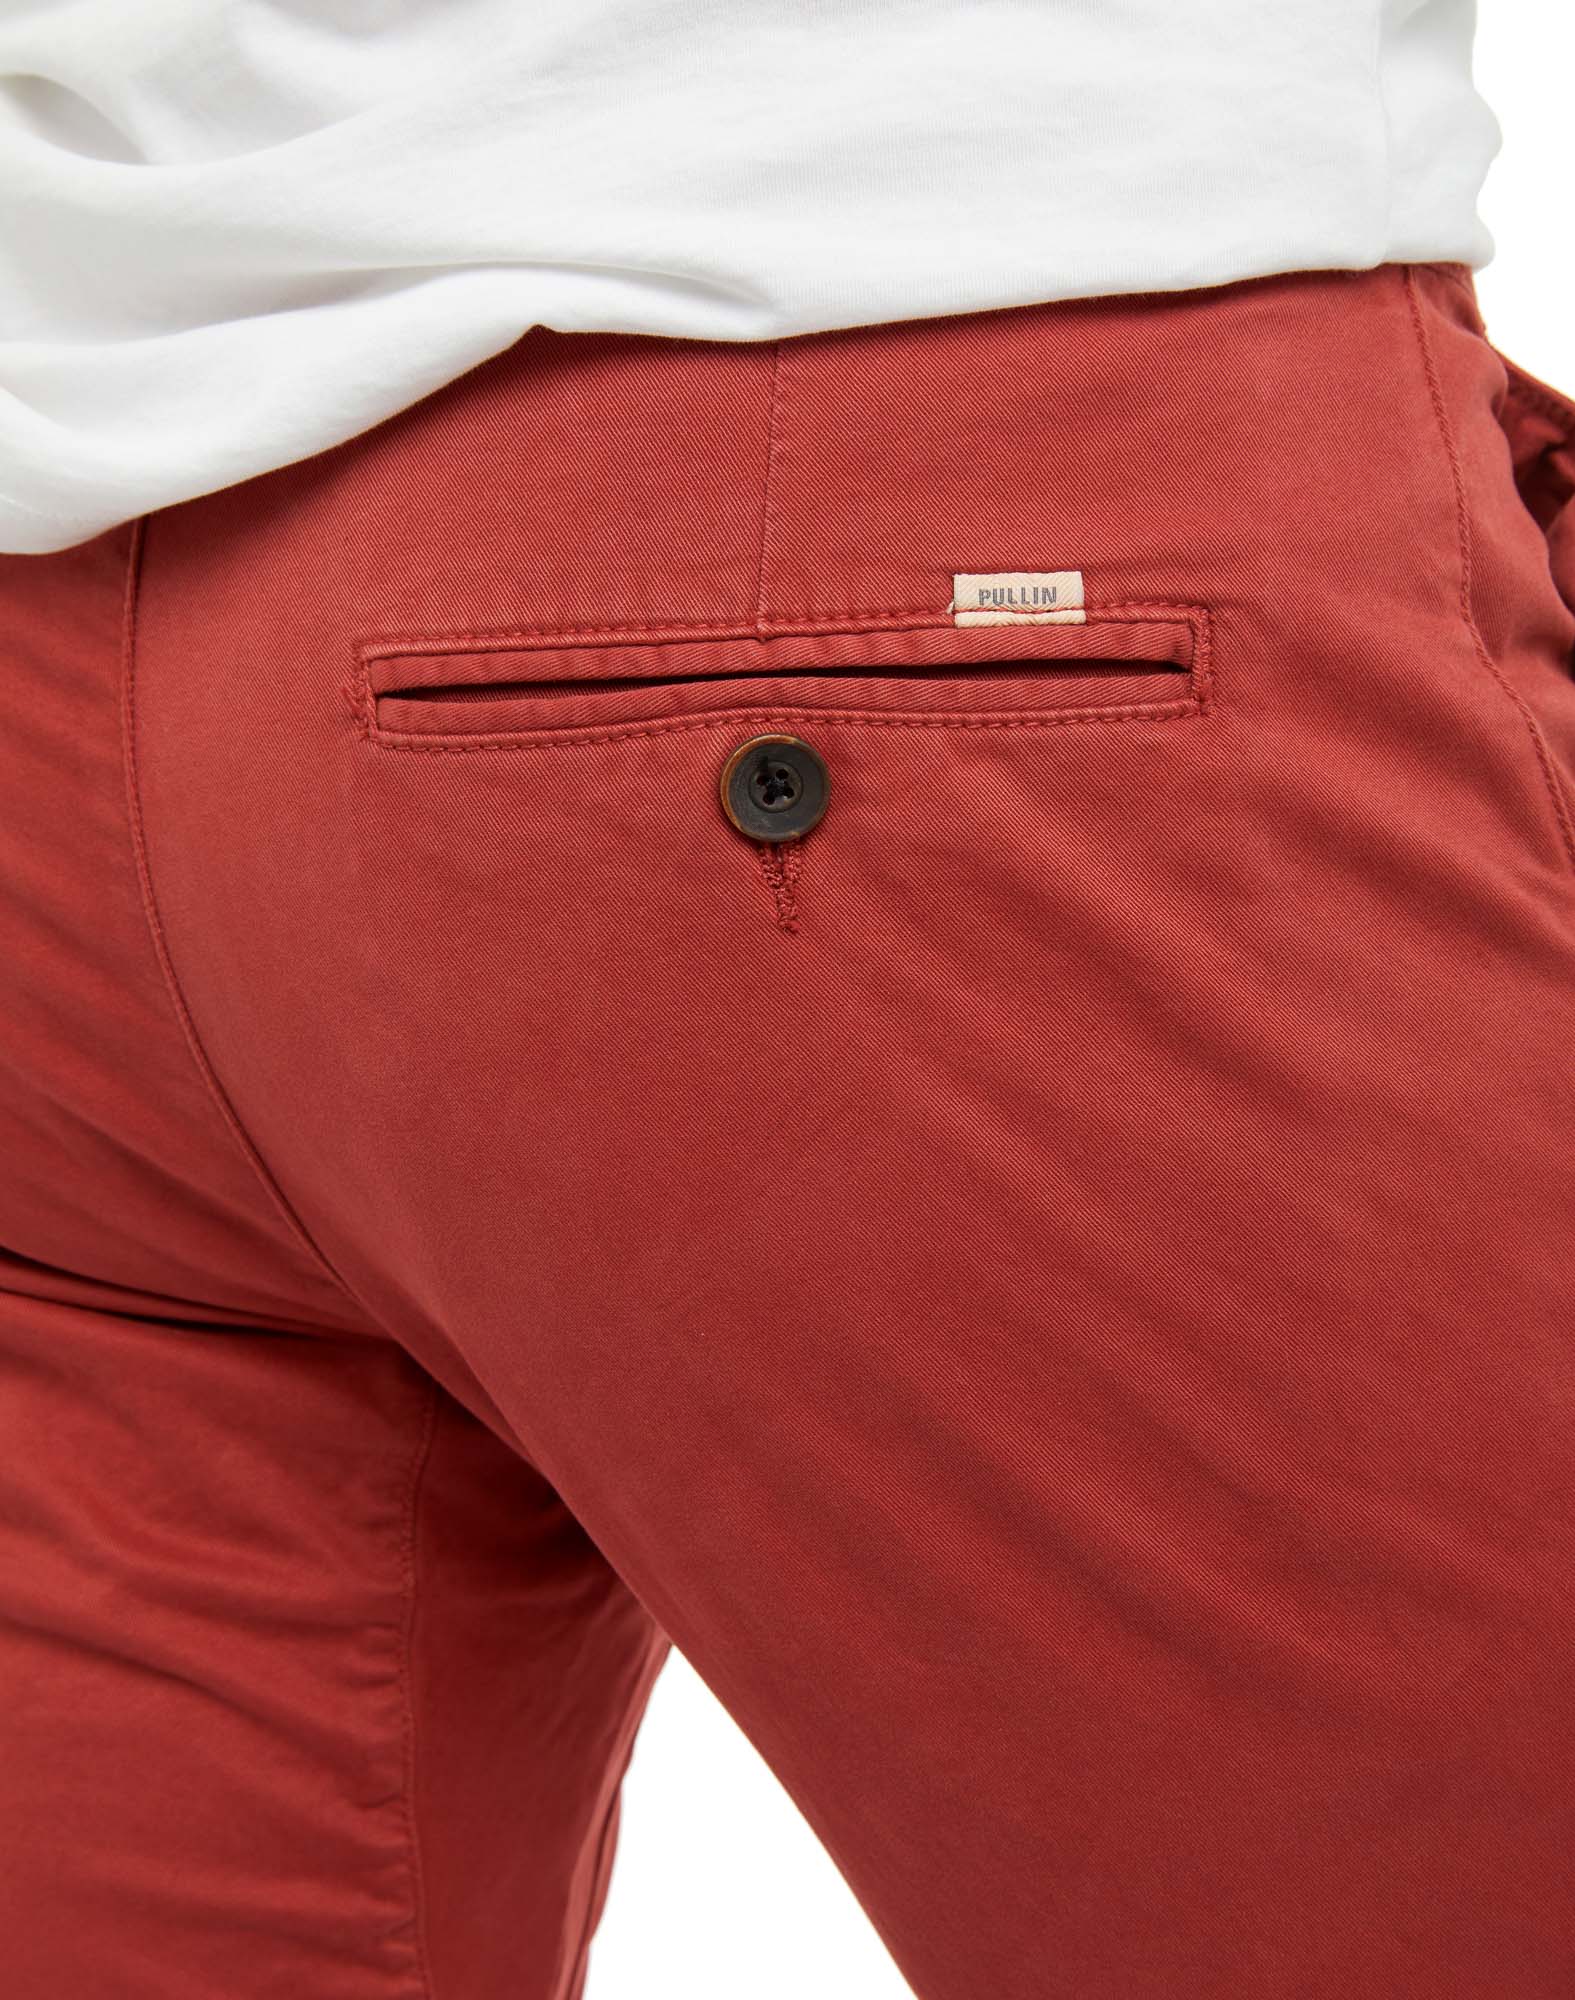 Men's pants DENING CHINO CHERRY